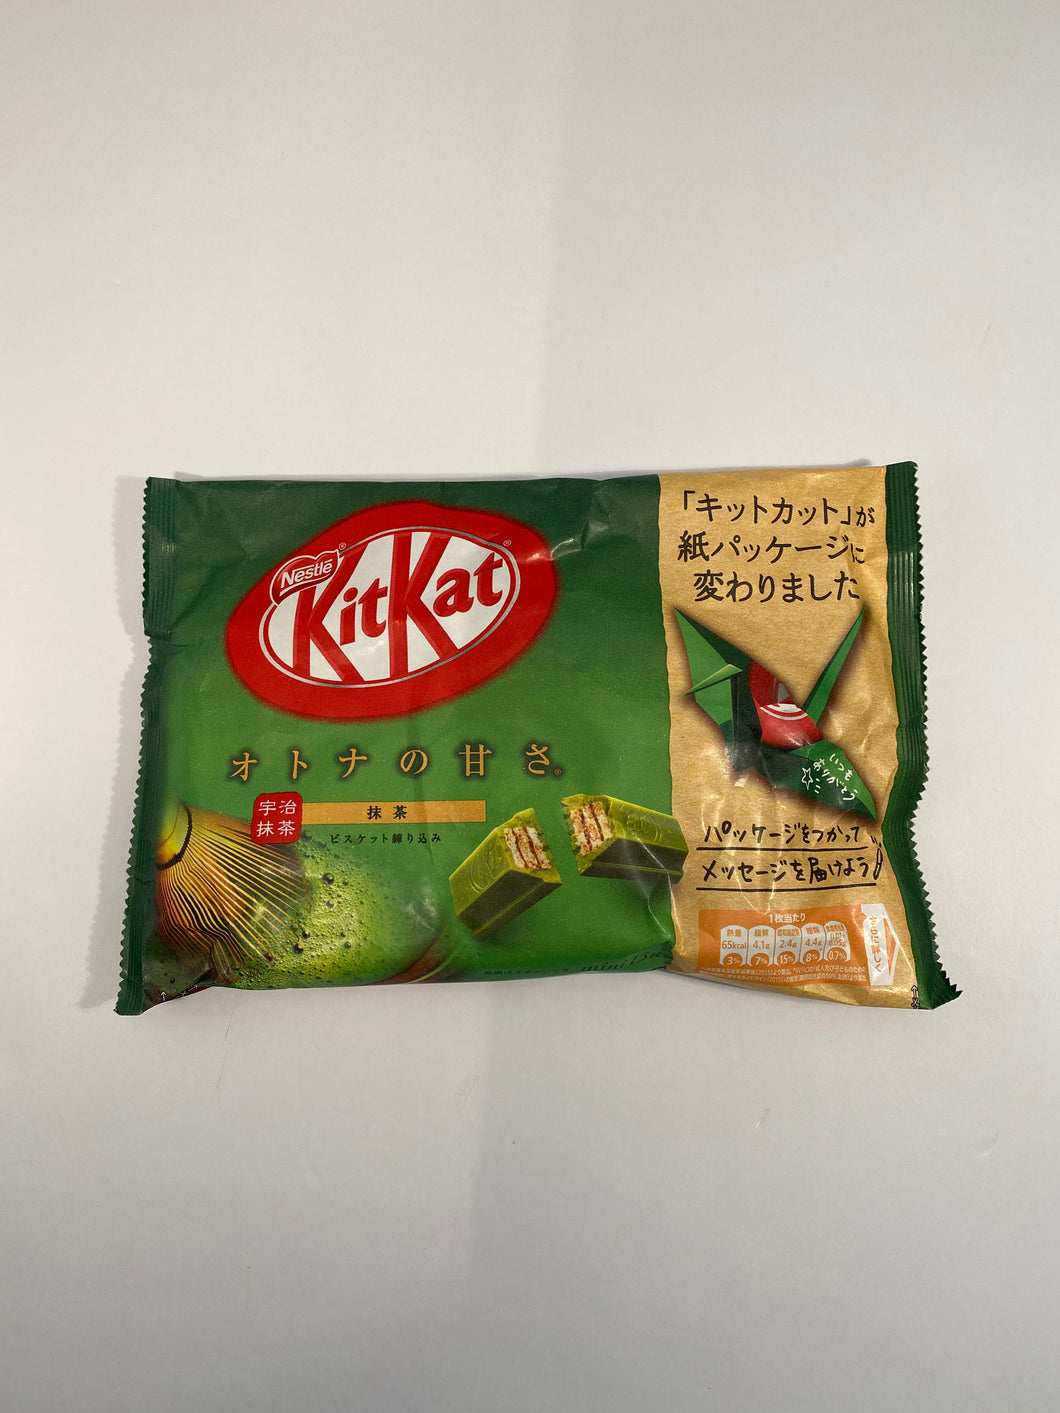 Kit Kat Green Tea  Chocolate